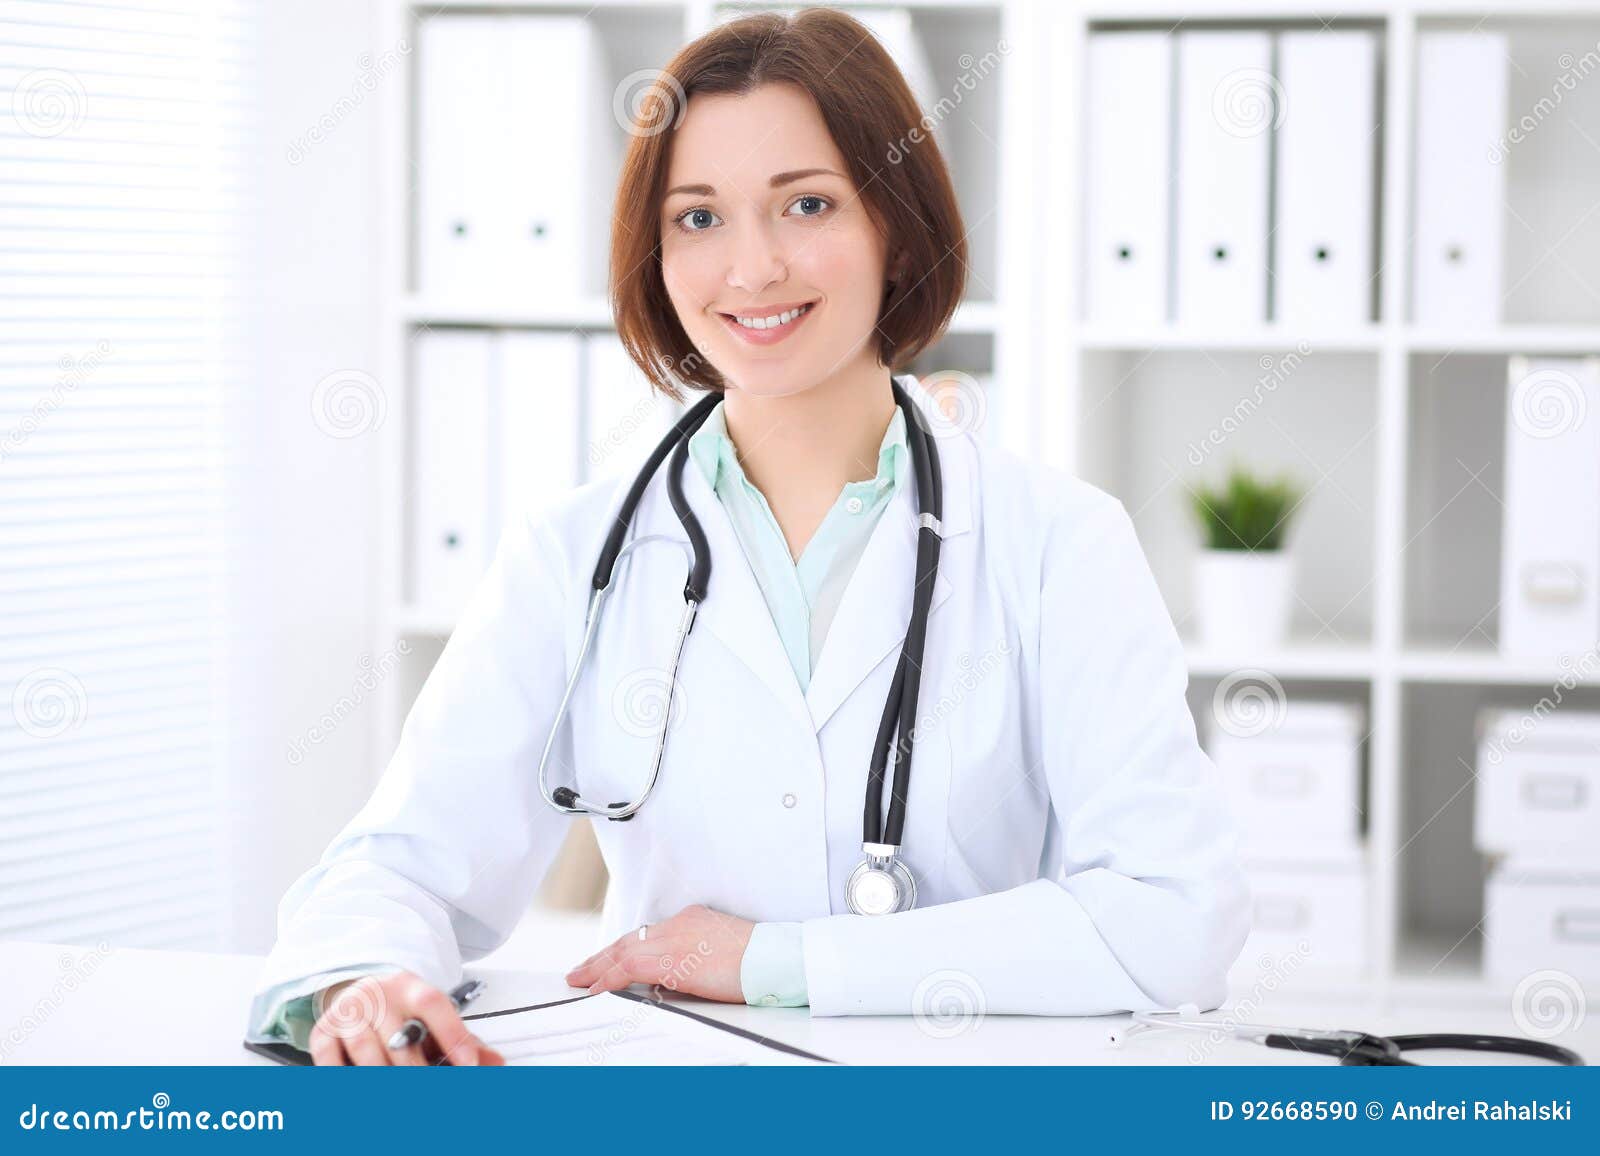 Жену врач видео. Женщина врач в кабинете. Врач с ноутбуком. Женщина врач картинка. Девушка врач на сером фоне.